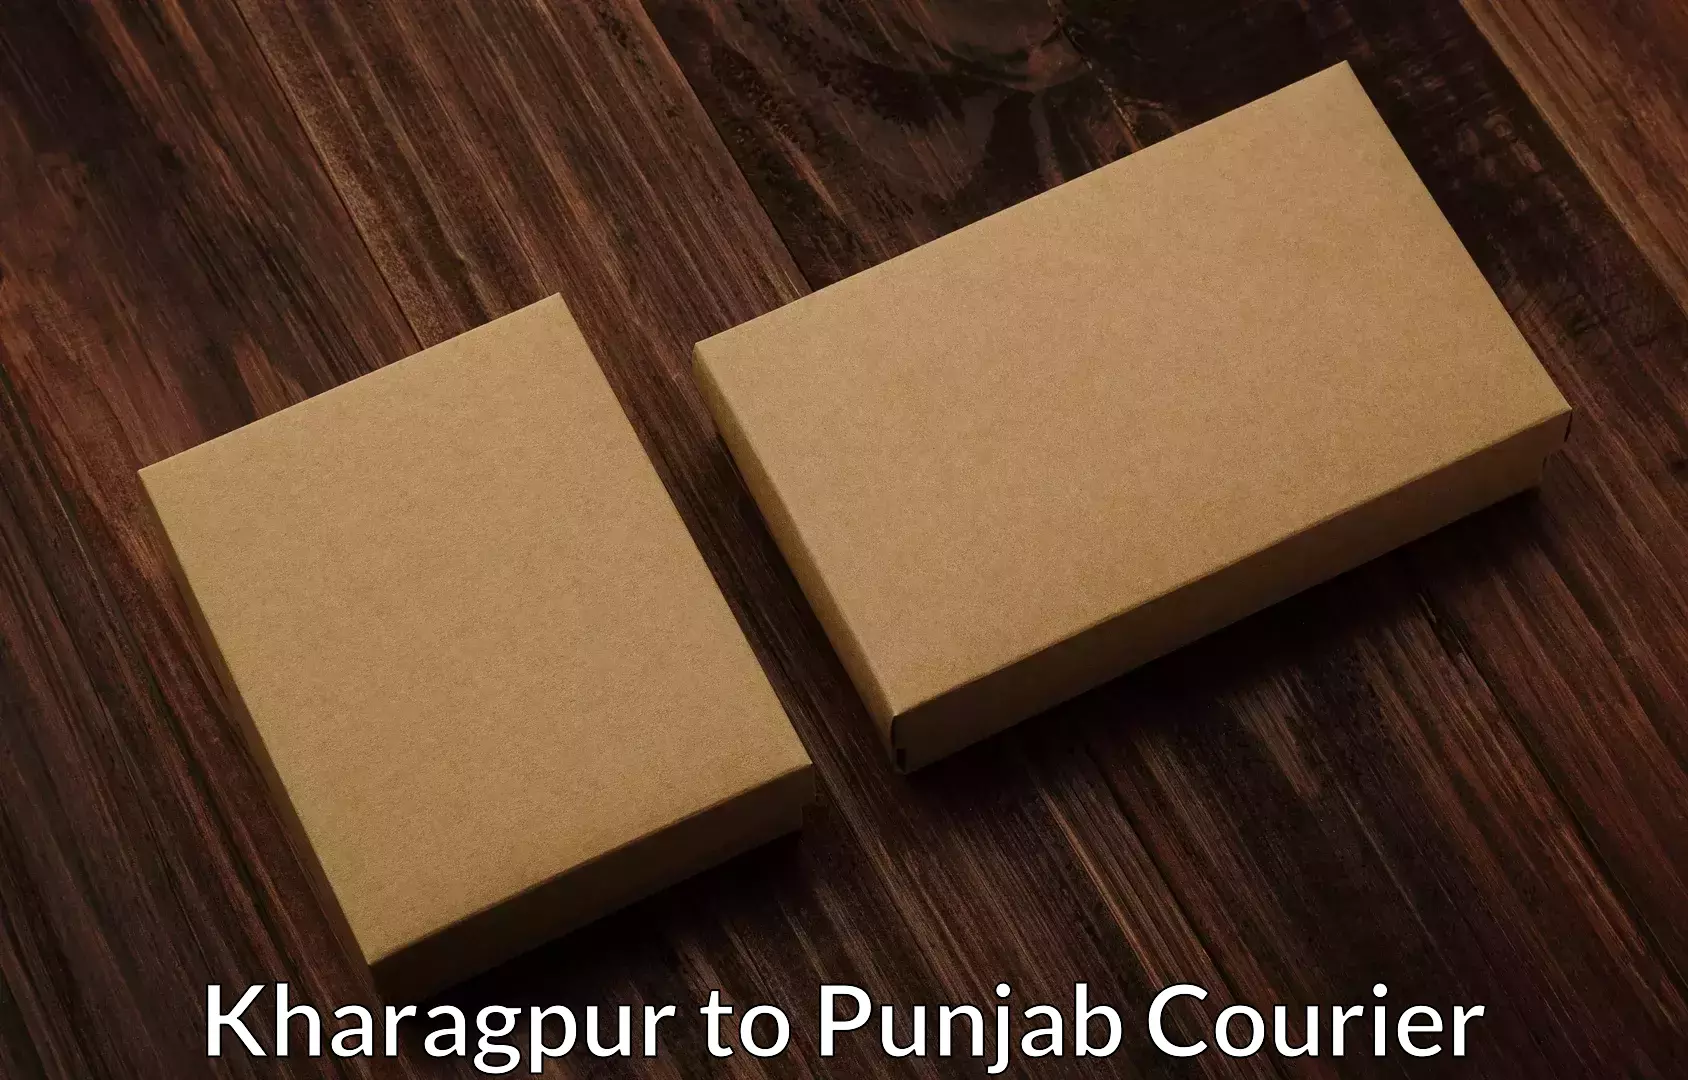 Furniture moving experts Kharagpur to Punjab